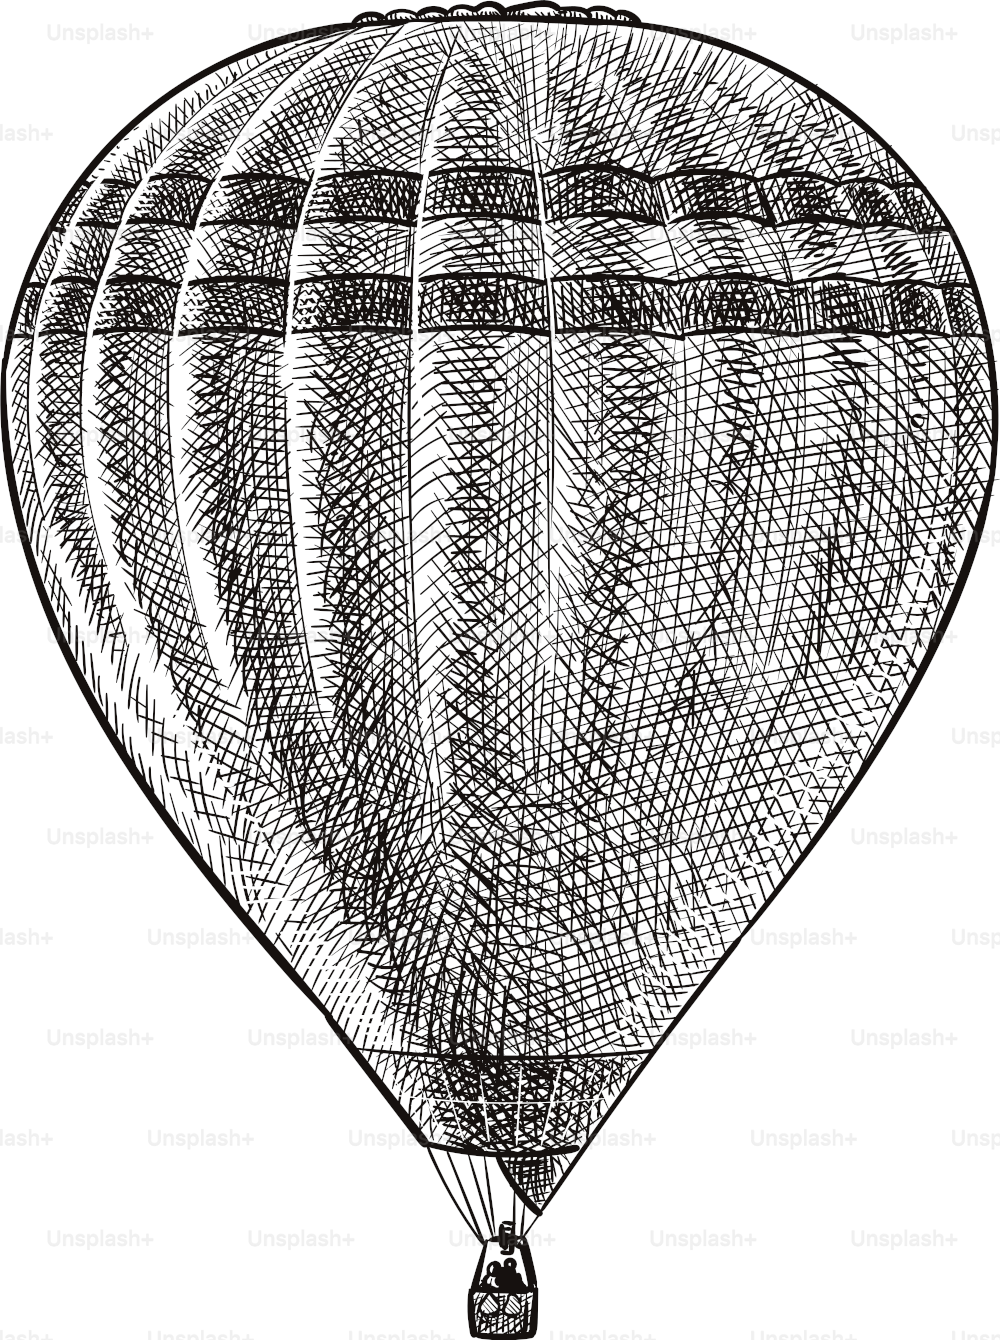 Illustrazione vecchio stile di un palloncino